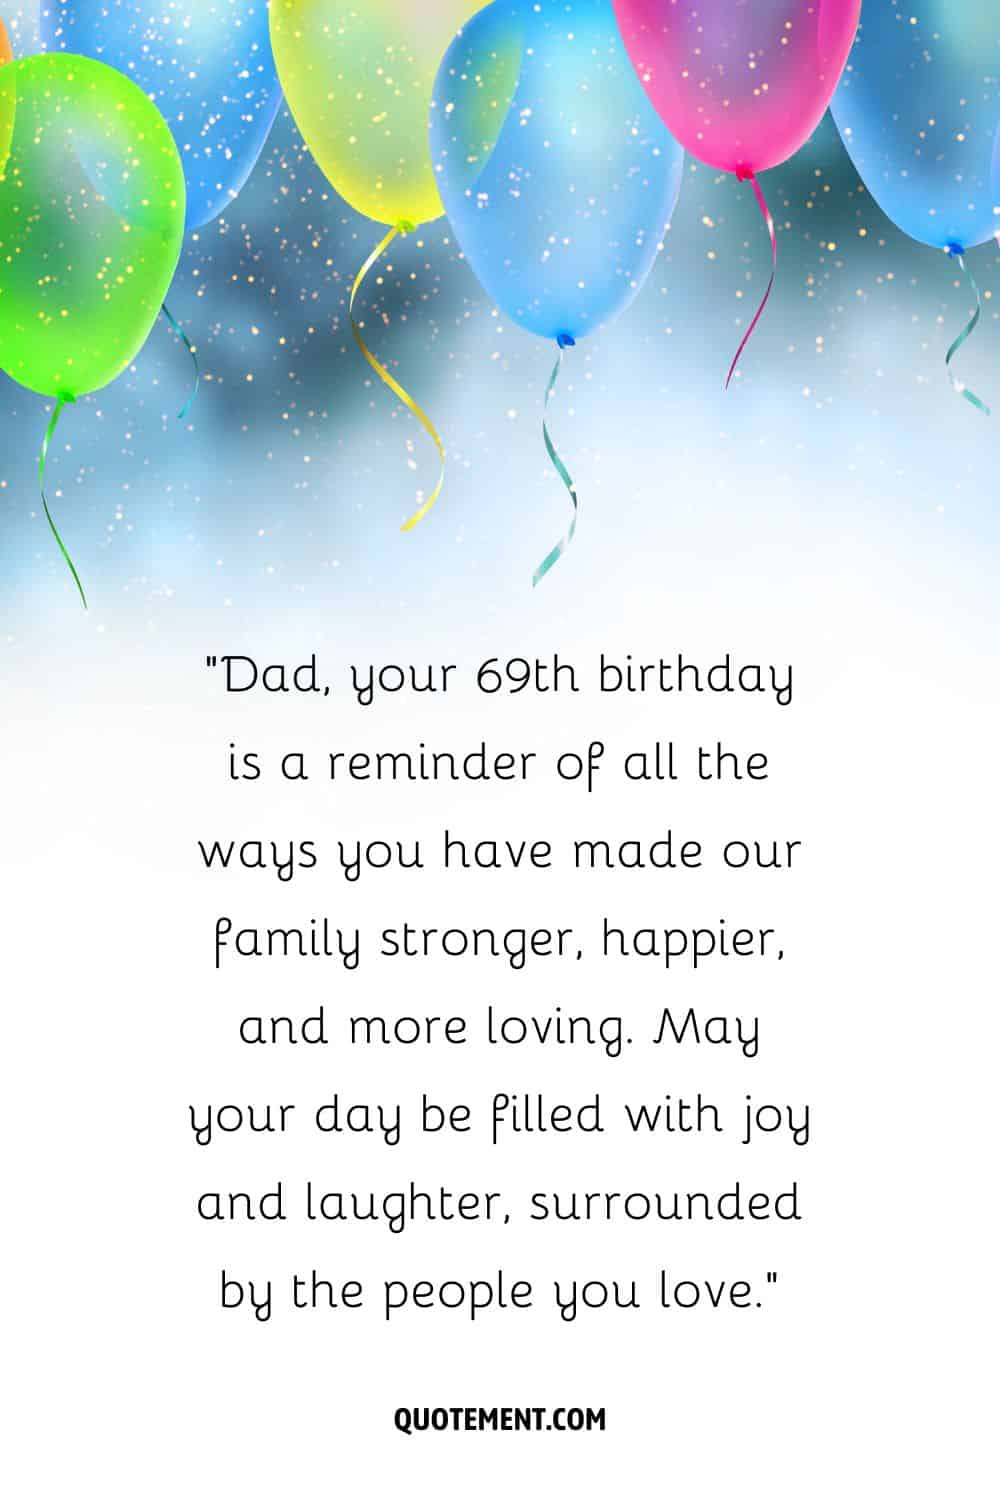 Papá, tu 69 cumpleaños es un recordatorio de todas las maneras en que has hecho a nuestra familia más fuerte, más feliz y más cariñosa. Que tu día esté lleno de alegría y risas, rodeado de la gente a la que quieres.